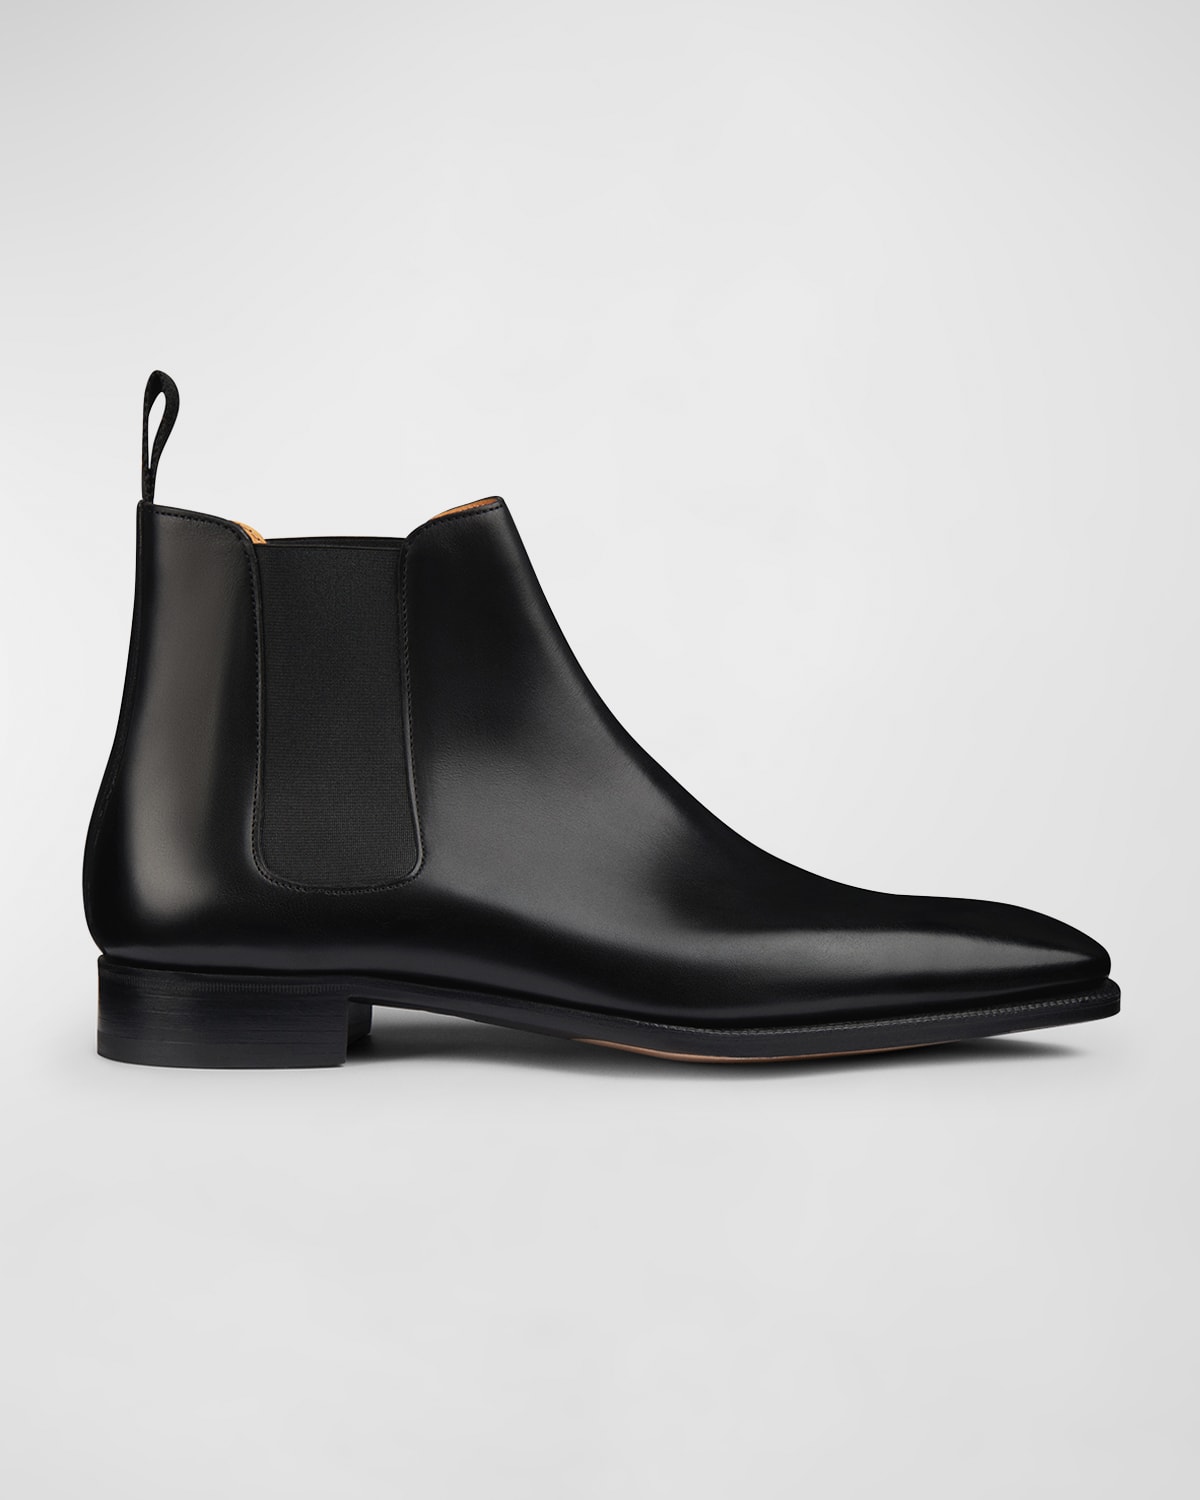 Magnanni Men's Caden Leather Chelsea Boots | Neiman Marcus